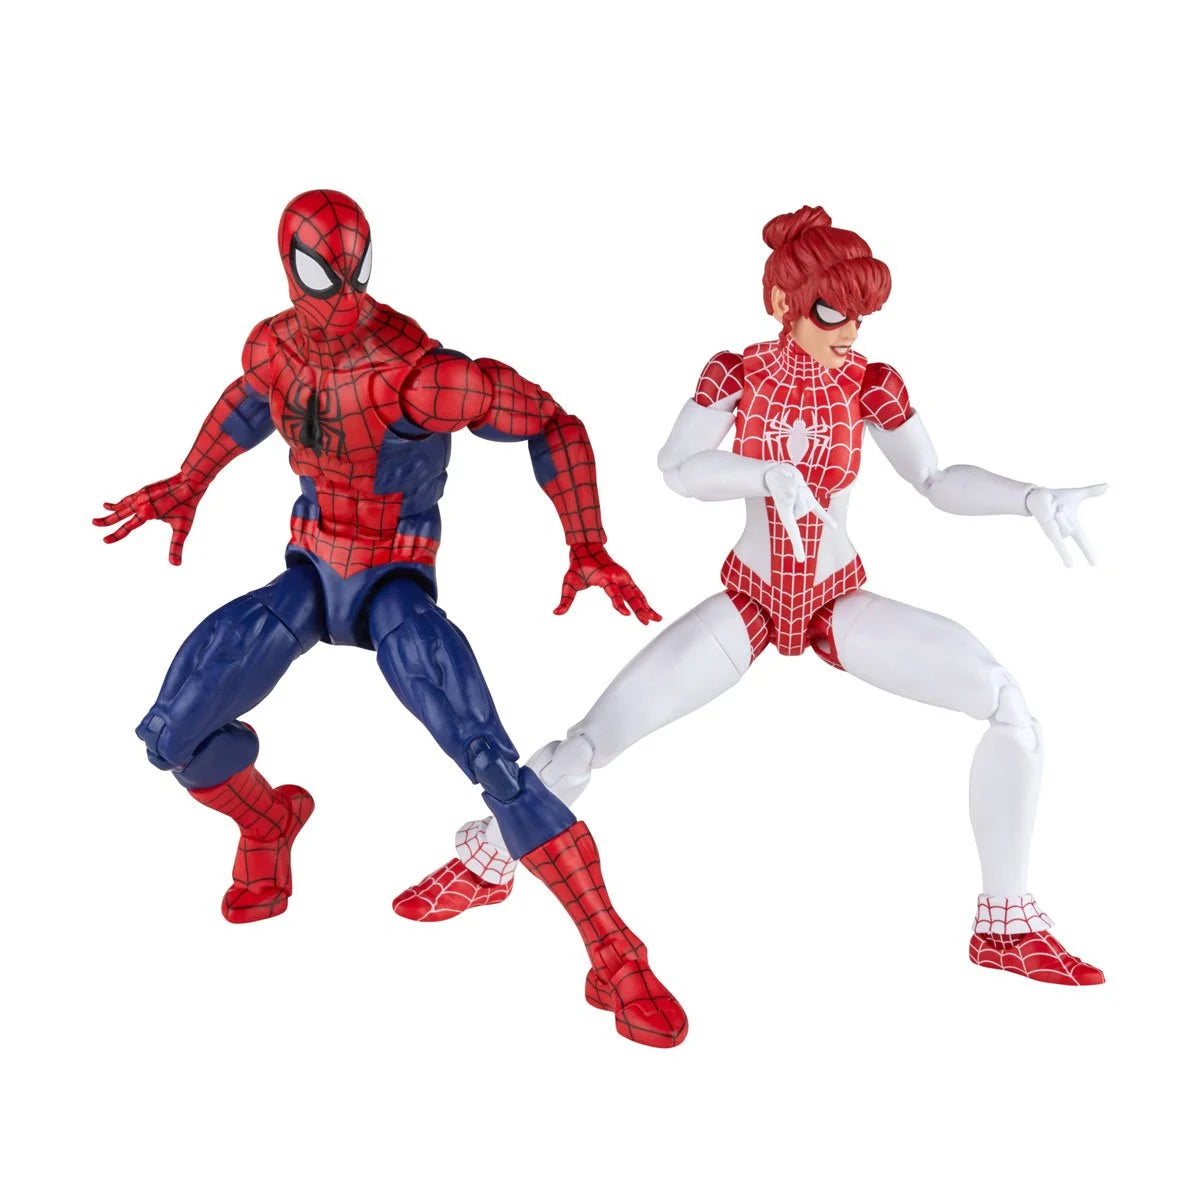 Marvel Legends Spider-Man and Spinneret Action Figure 2 Pack